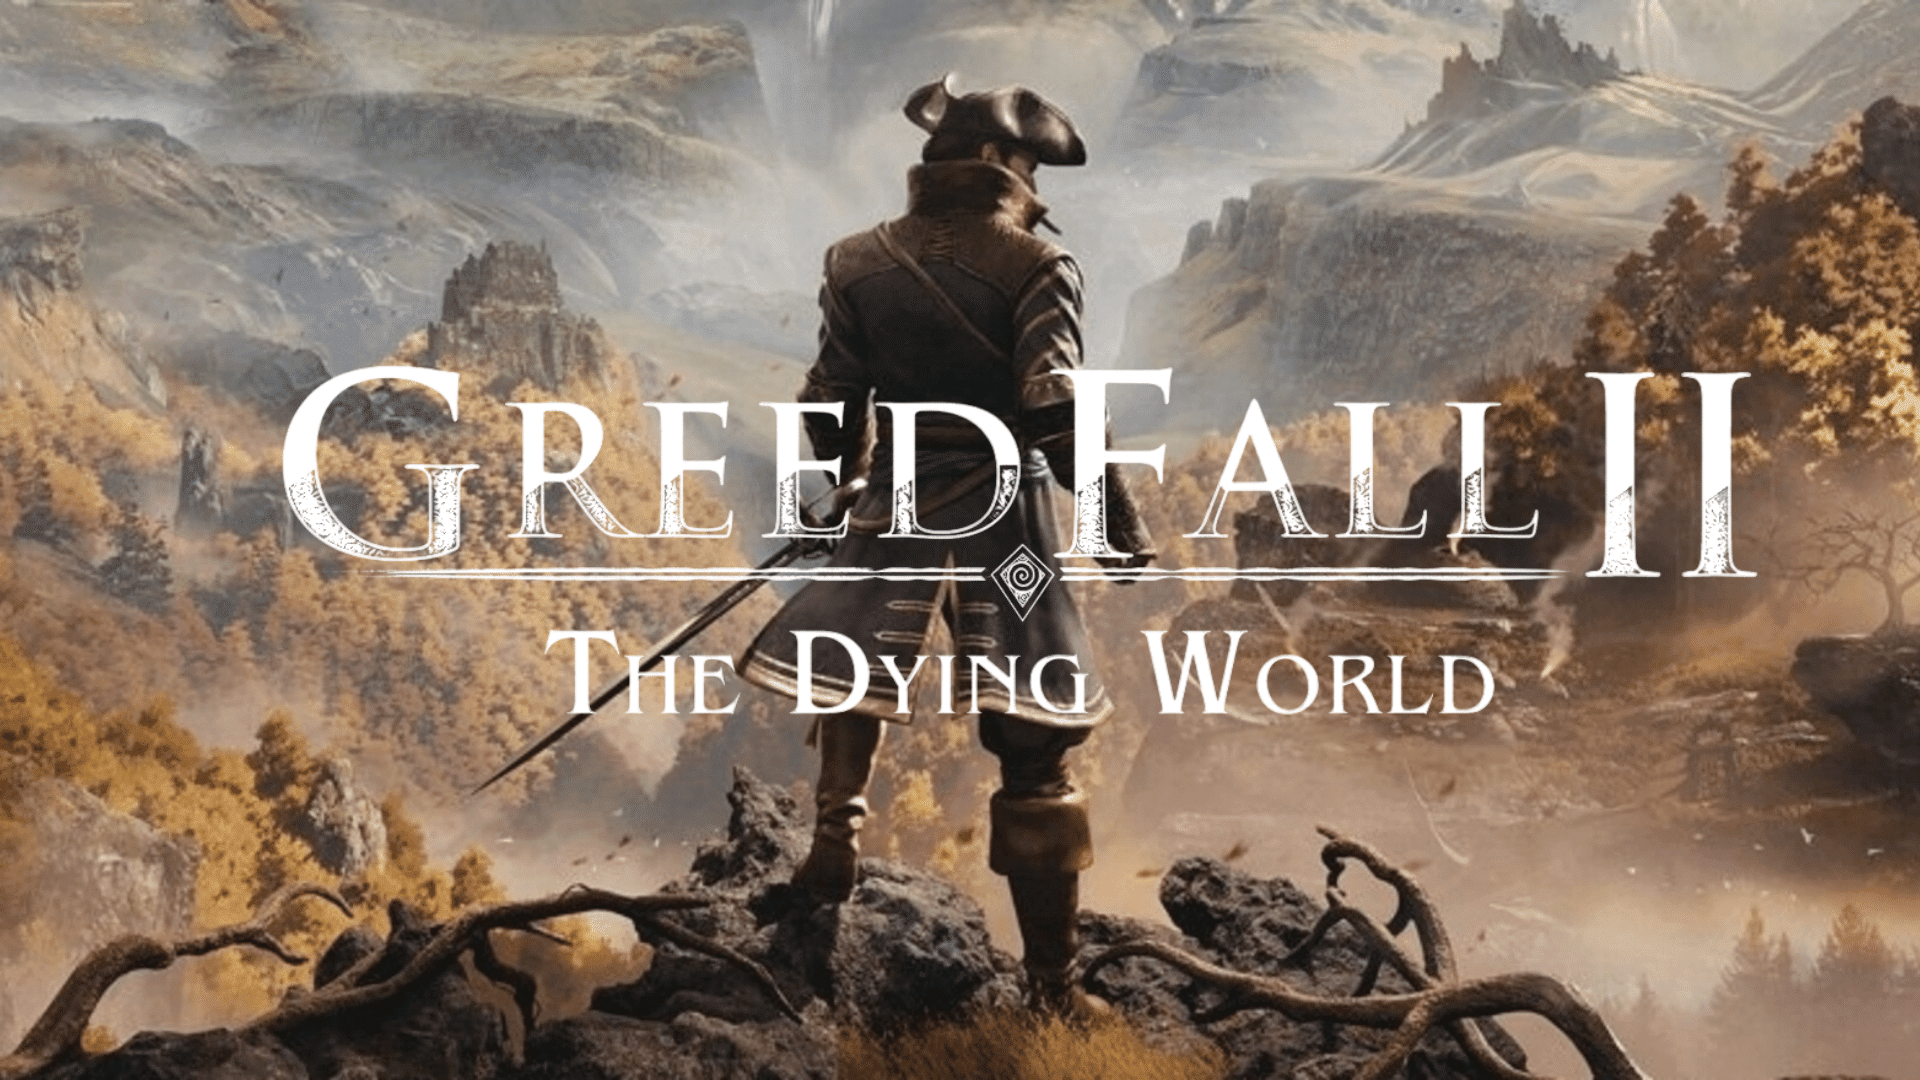 Twórcy GreedFall 2: The Dying World ujawnili nowe szczegóły dotyczące gry: "więcej romantycznych możliwości" i potencjalne cameos z poprzedniej części gry